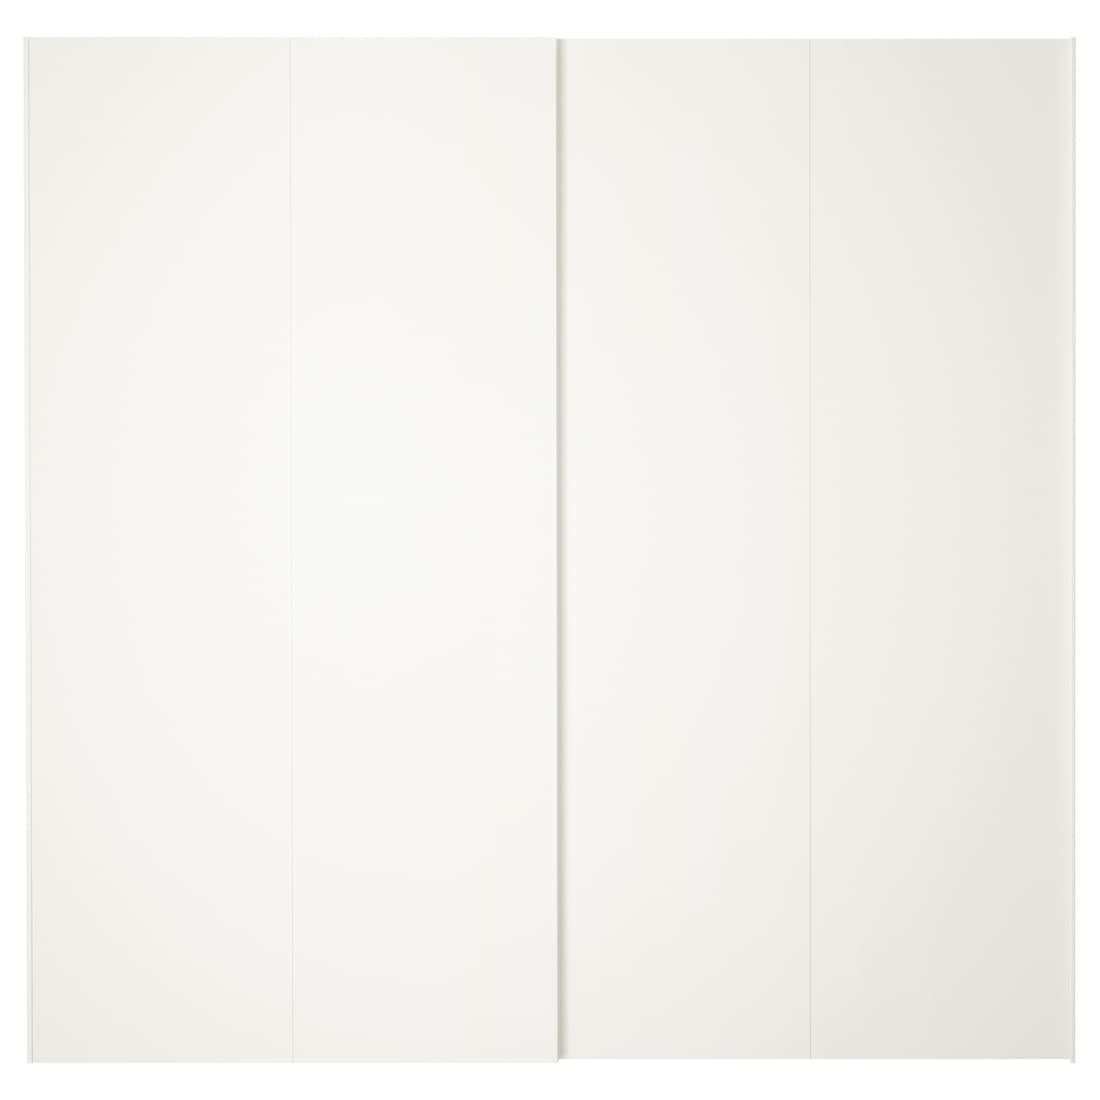 HASVIK ХАСВИК Пара раздвижных дверей, белый, 200x201 см